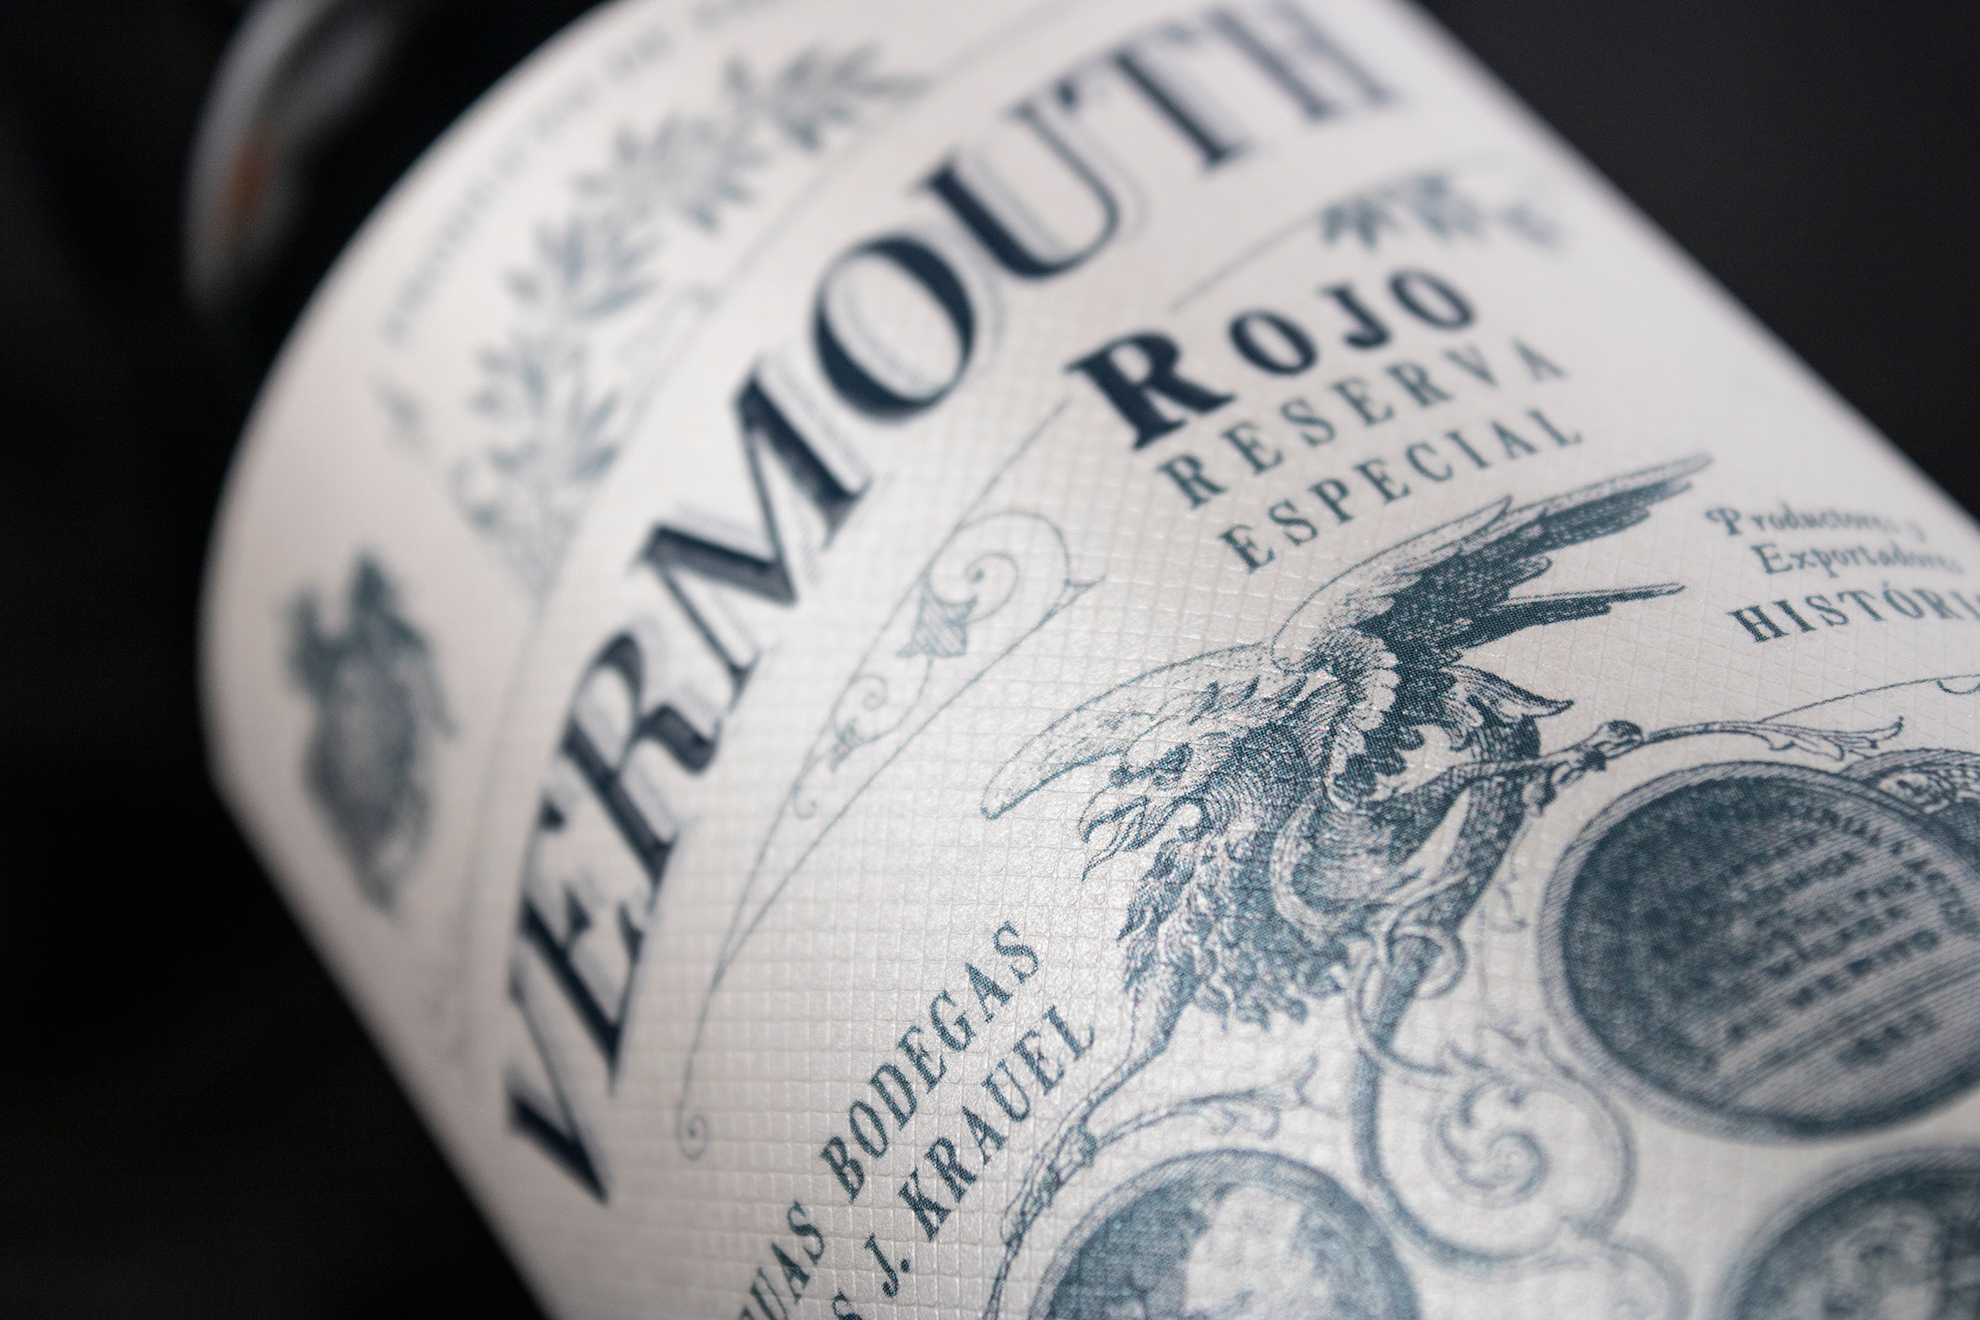 Vermouth Krauel rectyling de un clásico